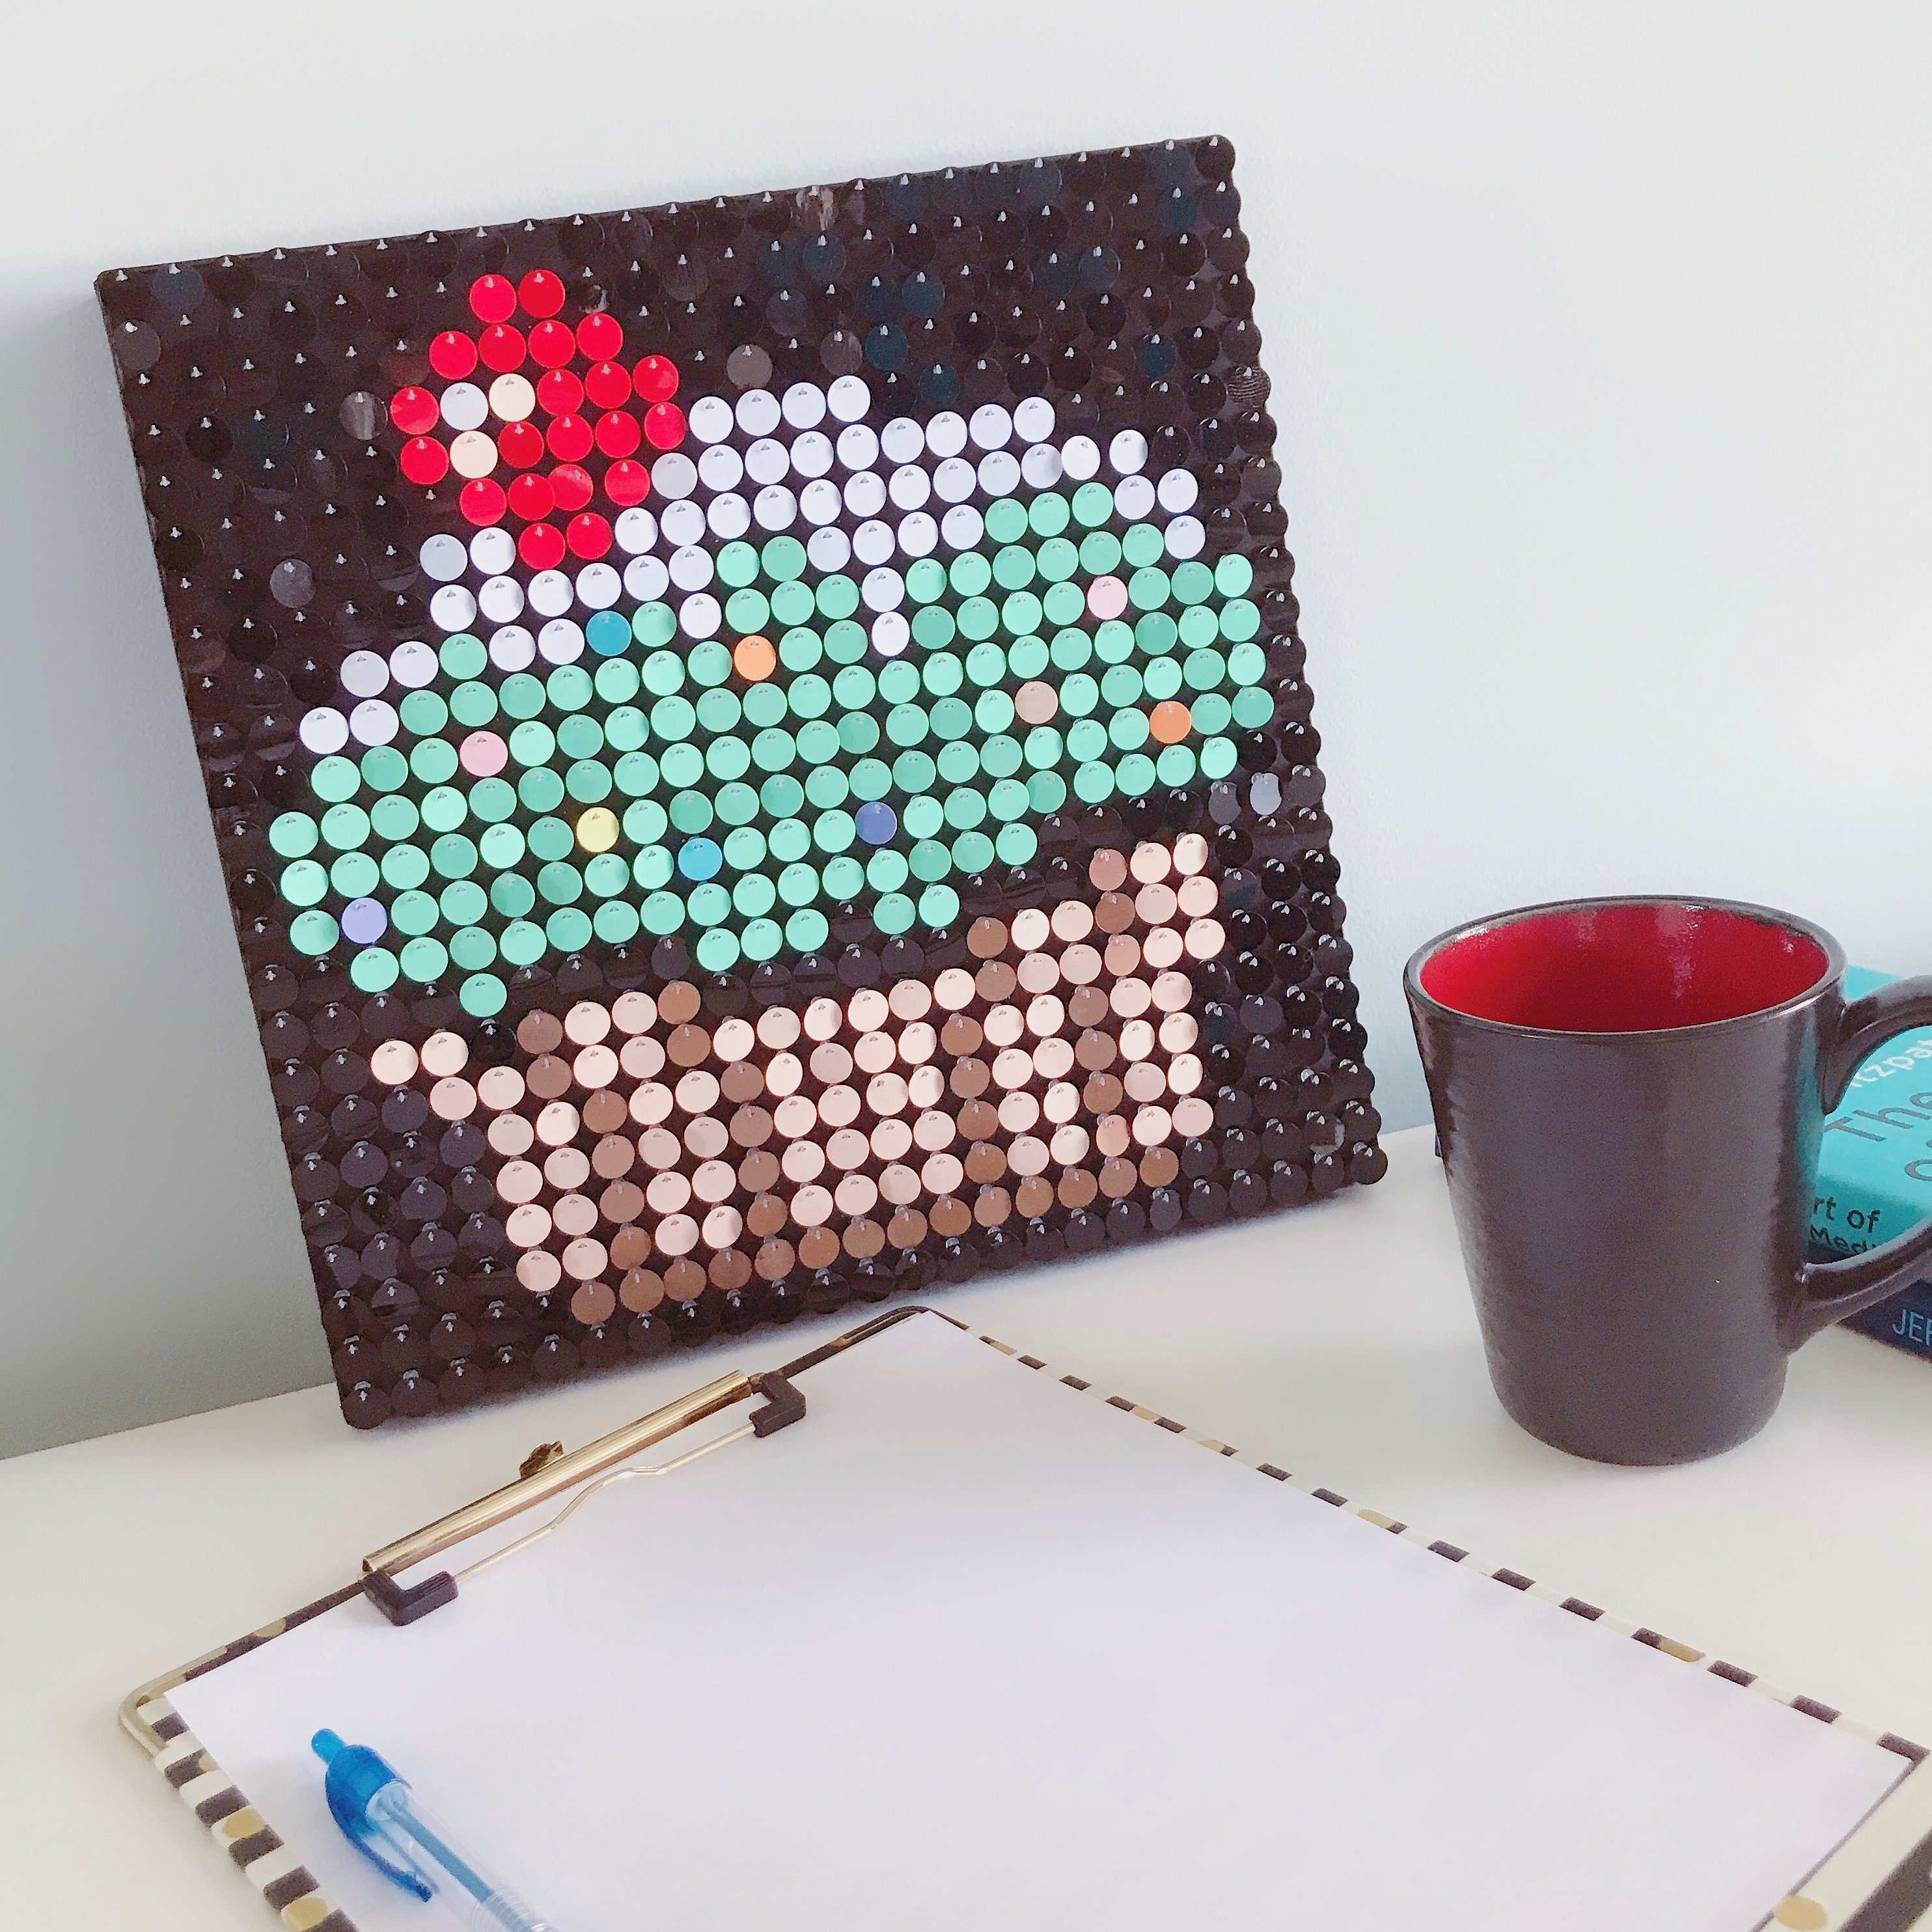 Cherries Sequin Pixel Art Craft Kit Do-it-yourself Wall Art 